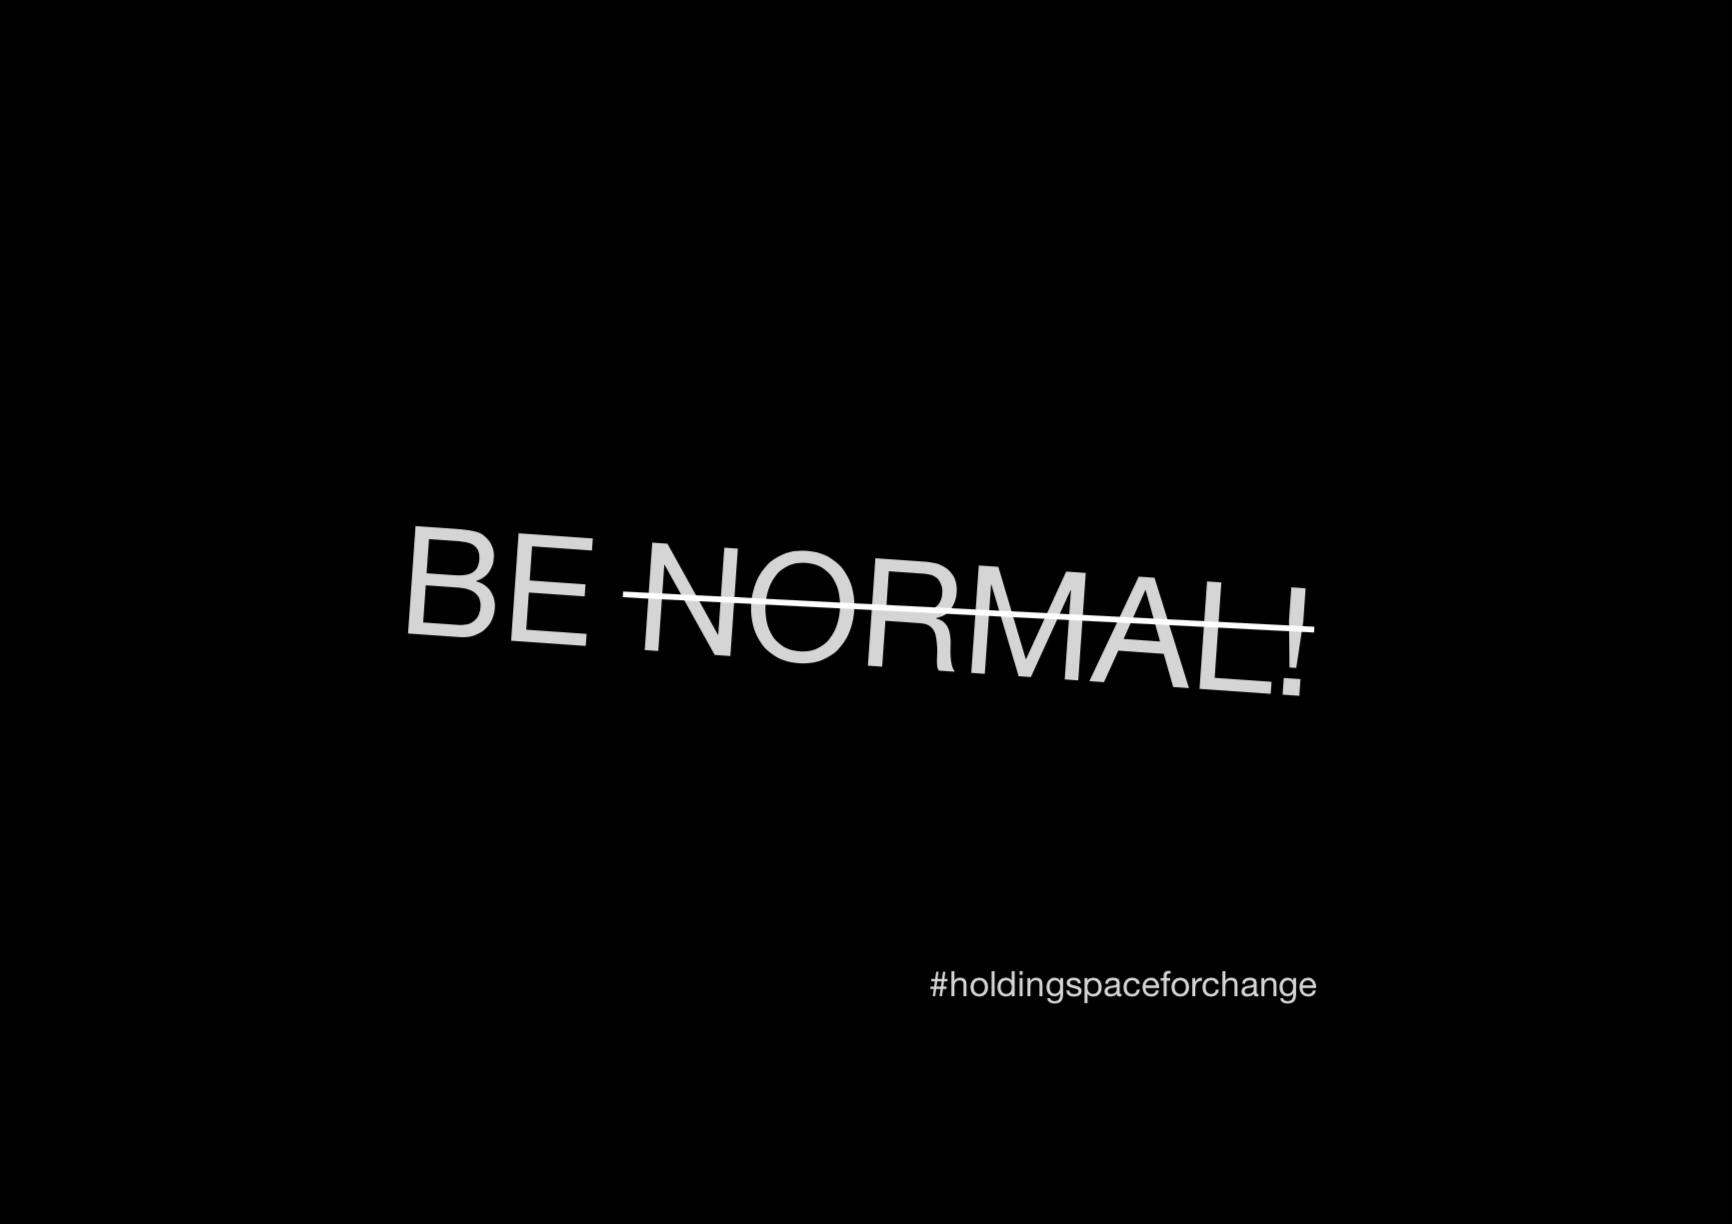 Tekst 'be normal' met streep door 'normal'